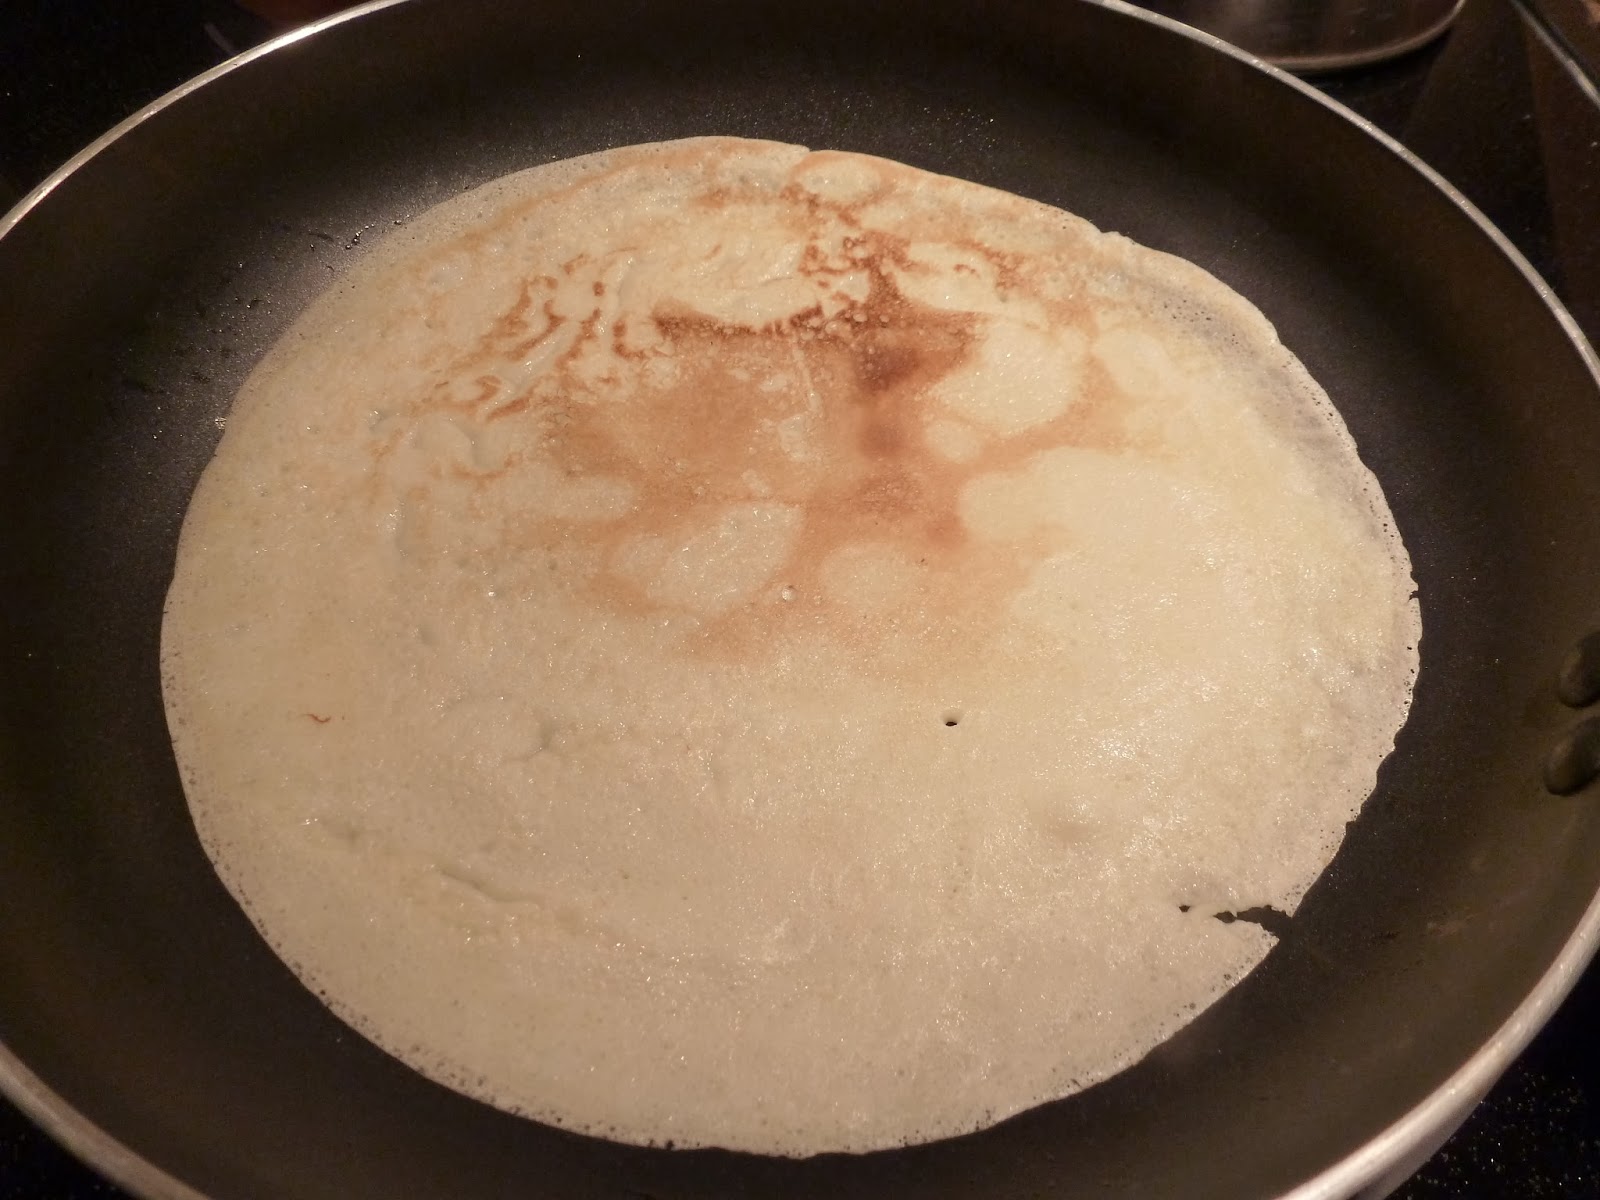 52 pancakes in 52 weeks - 